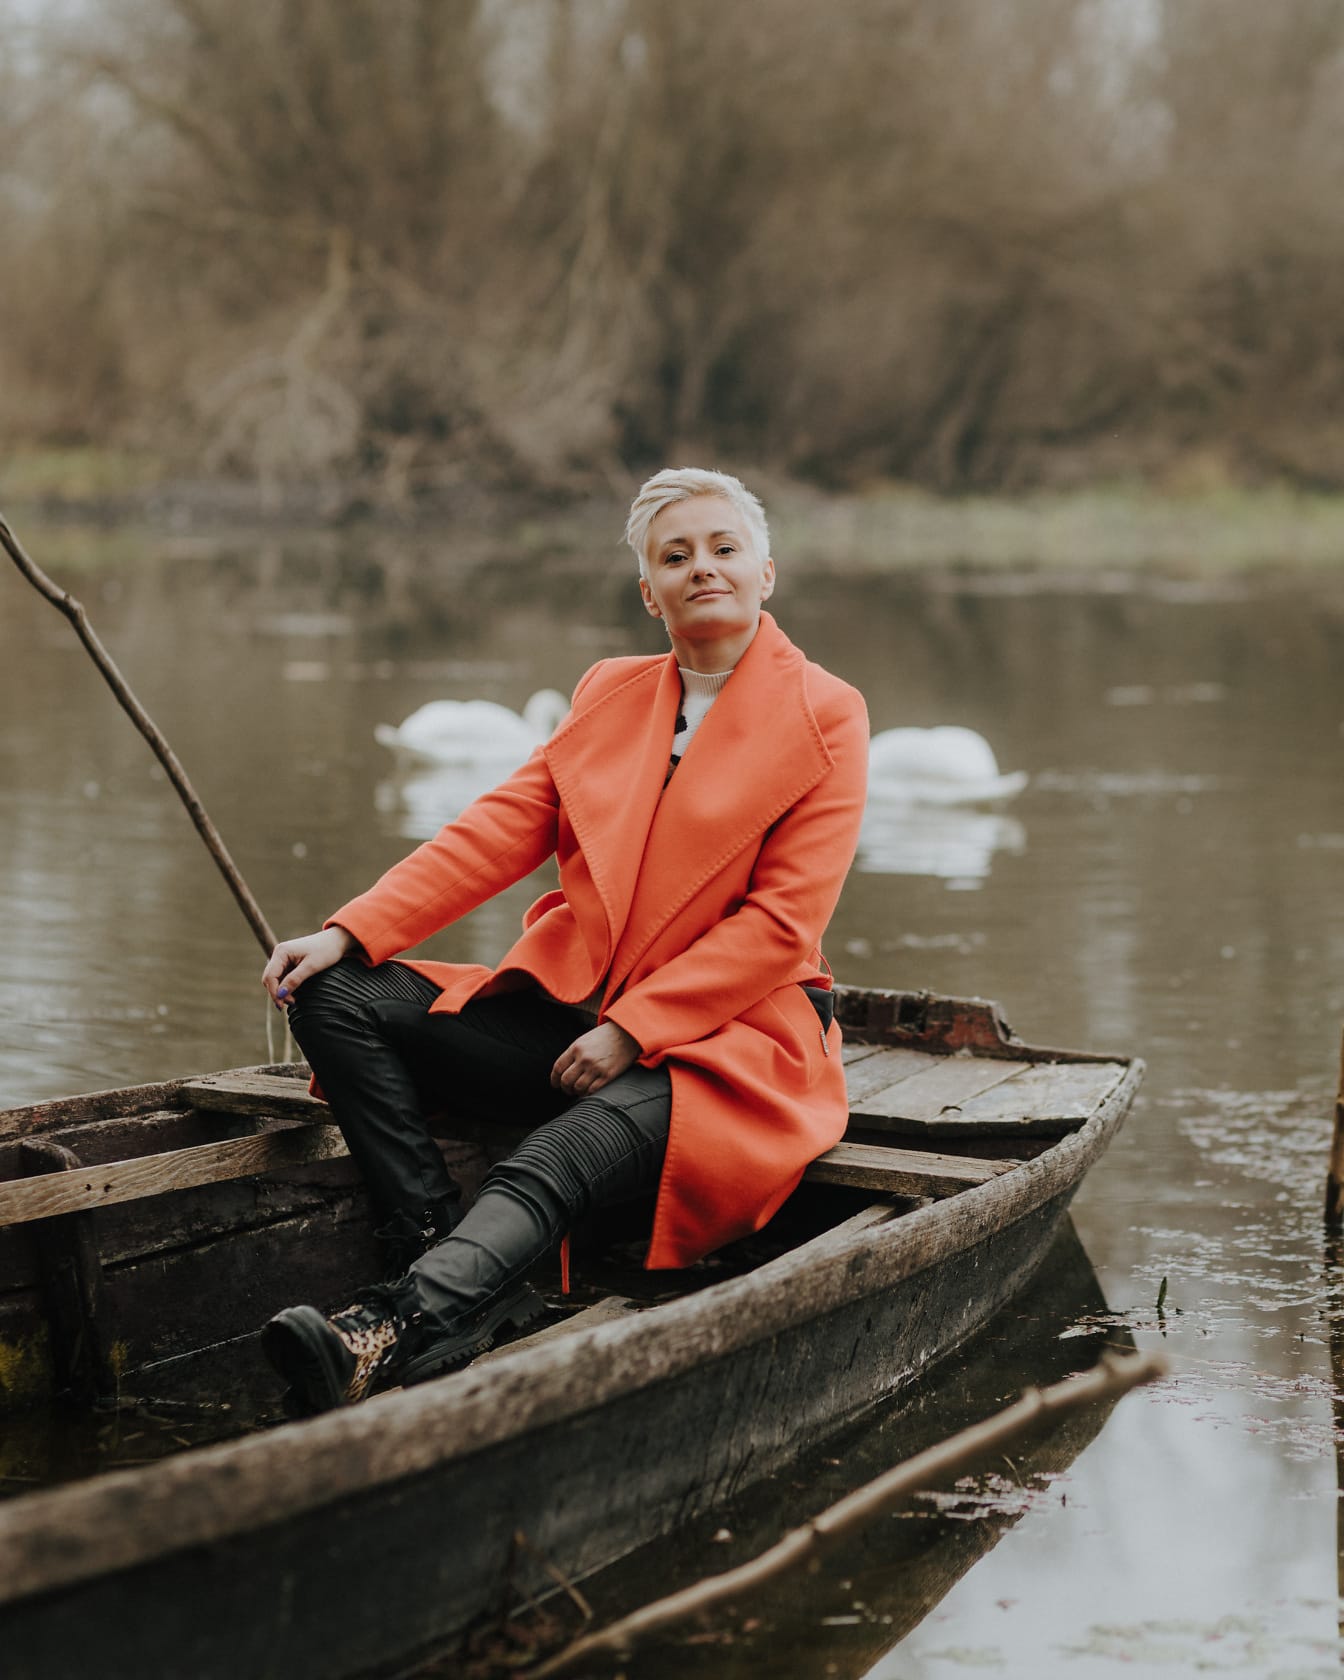 Wanita ceria dengan mantel warna oranye dan celana kulit duduk di perahu